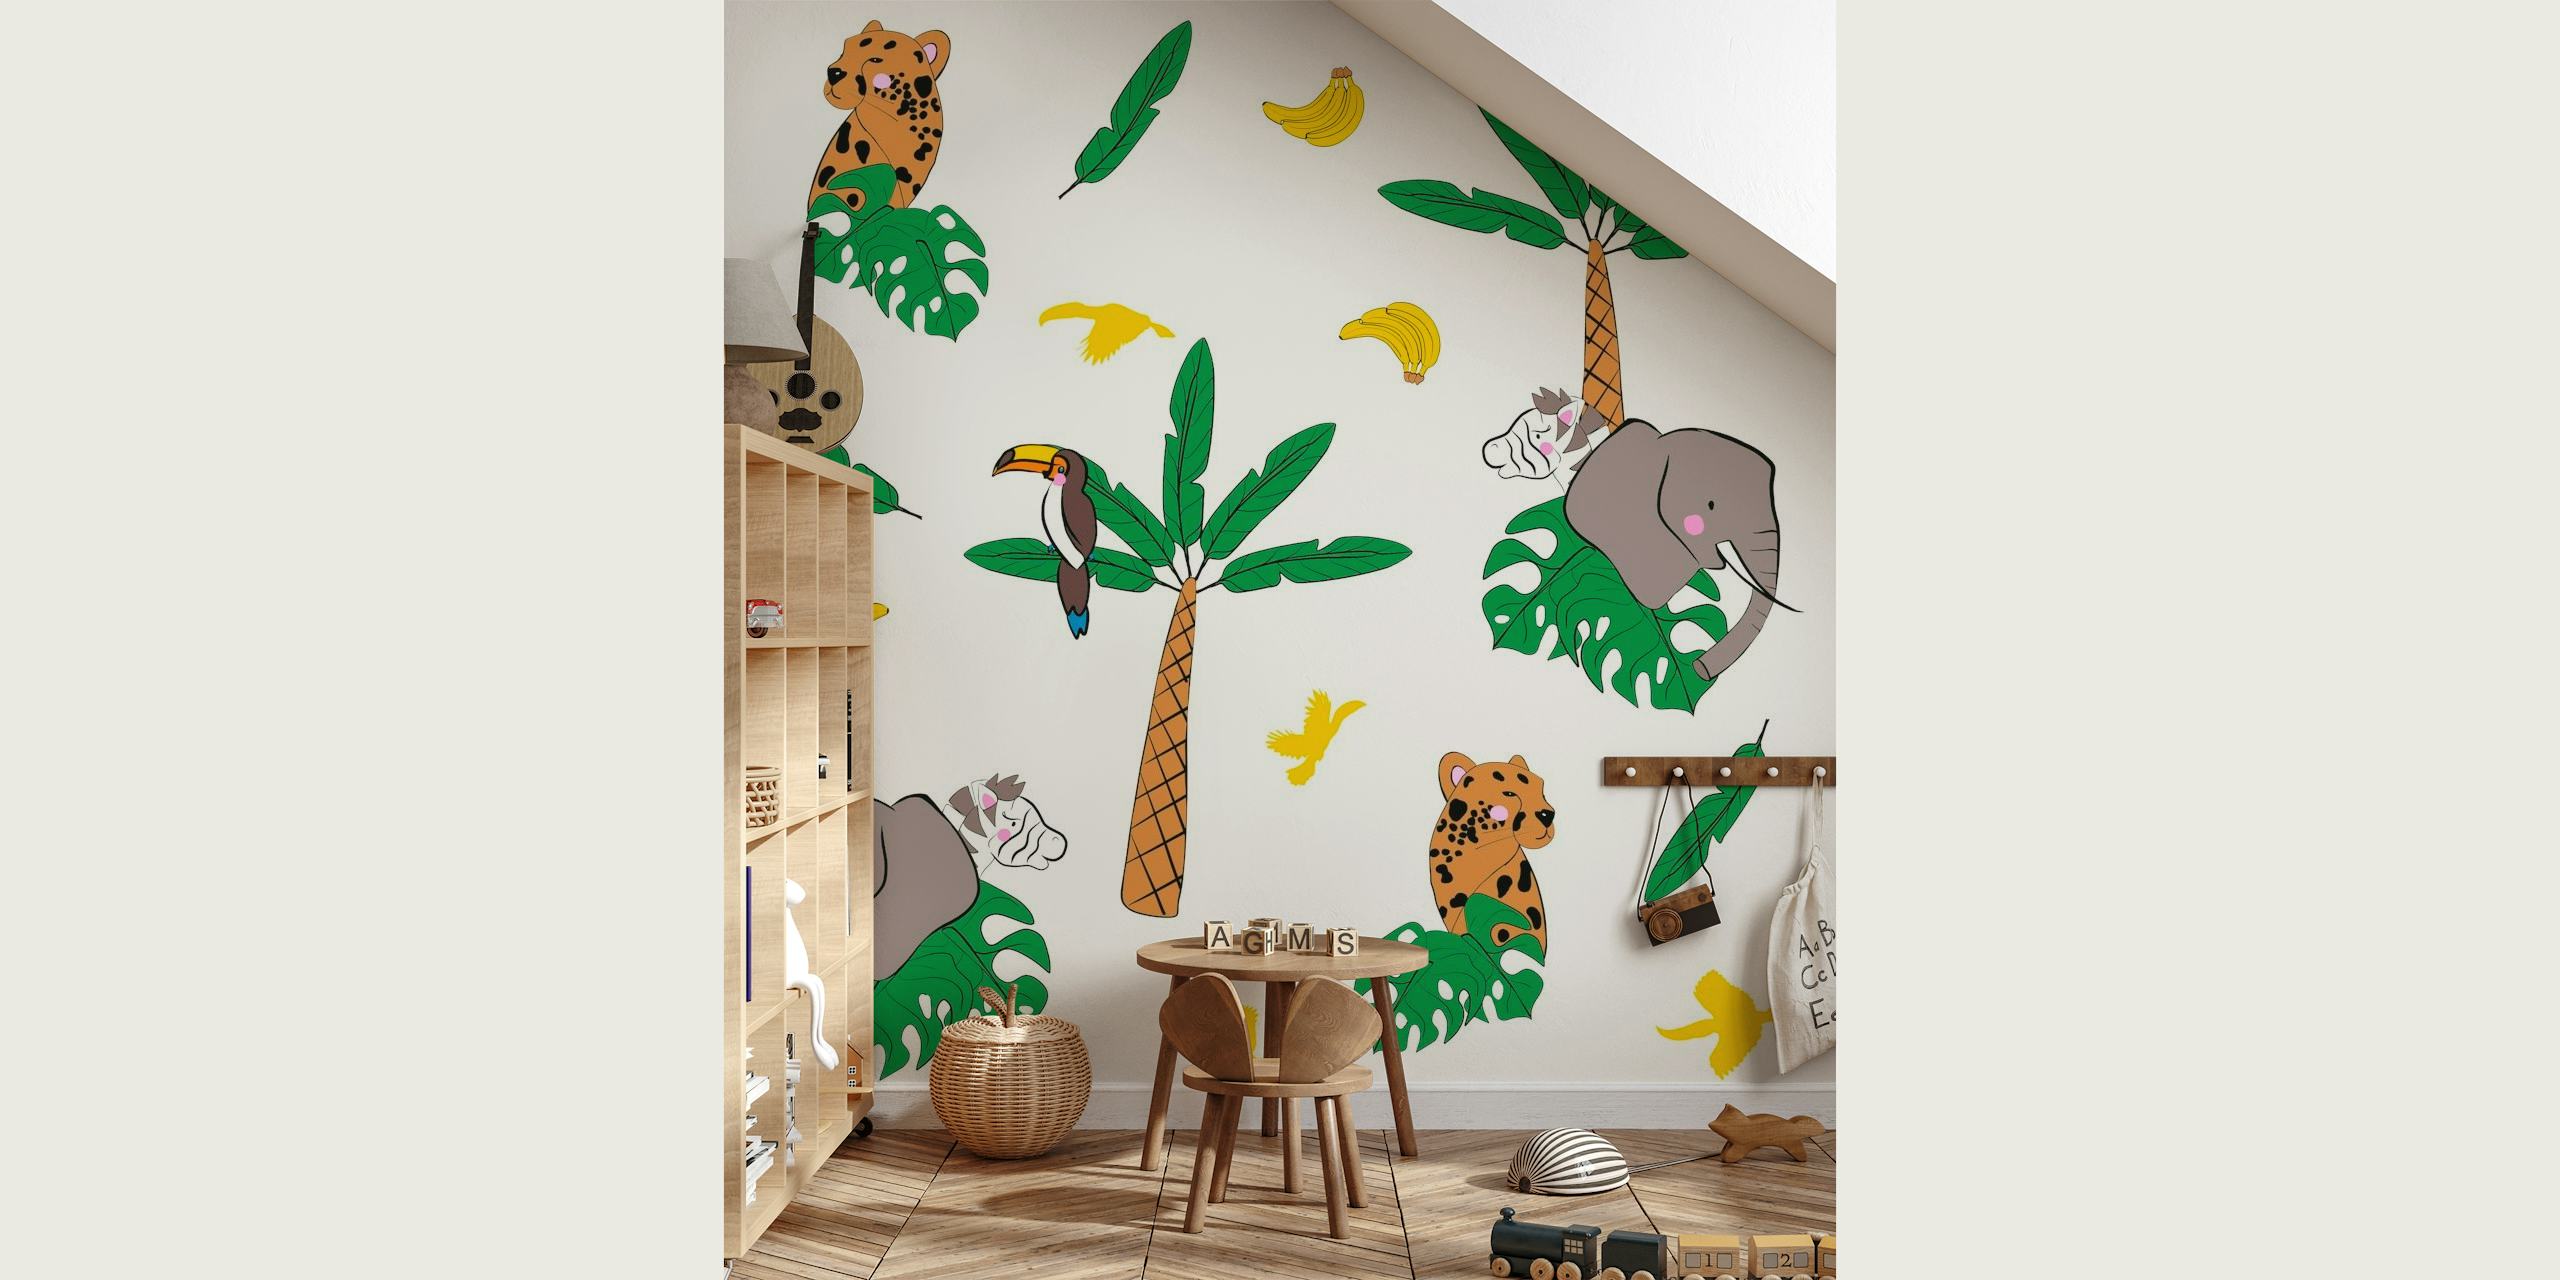 Colorato murale safari nella giungla con leopardi, elefanti, palme, banane e farfalle